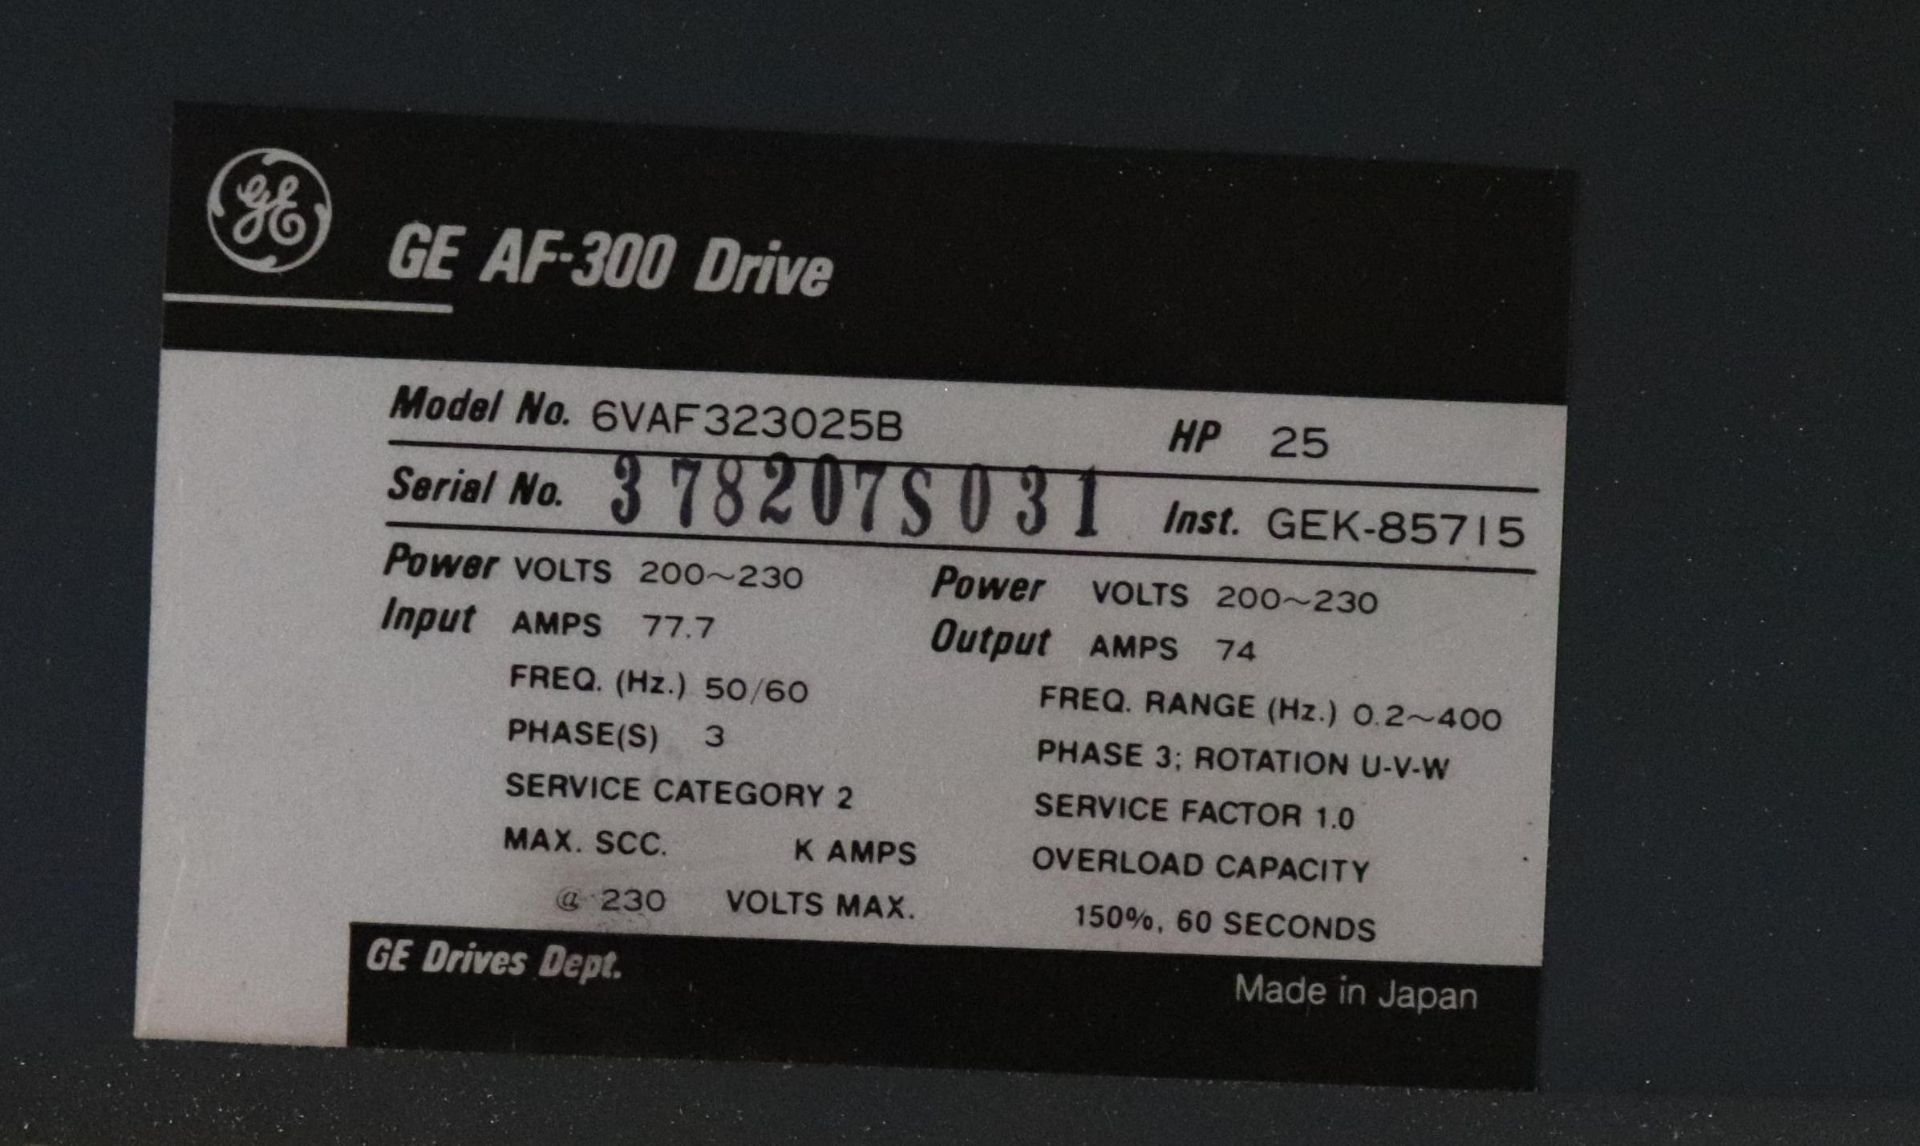 GE AF-300 B AC drive, 25 HP, No. 6VAF323025B - Image 5 of 6